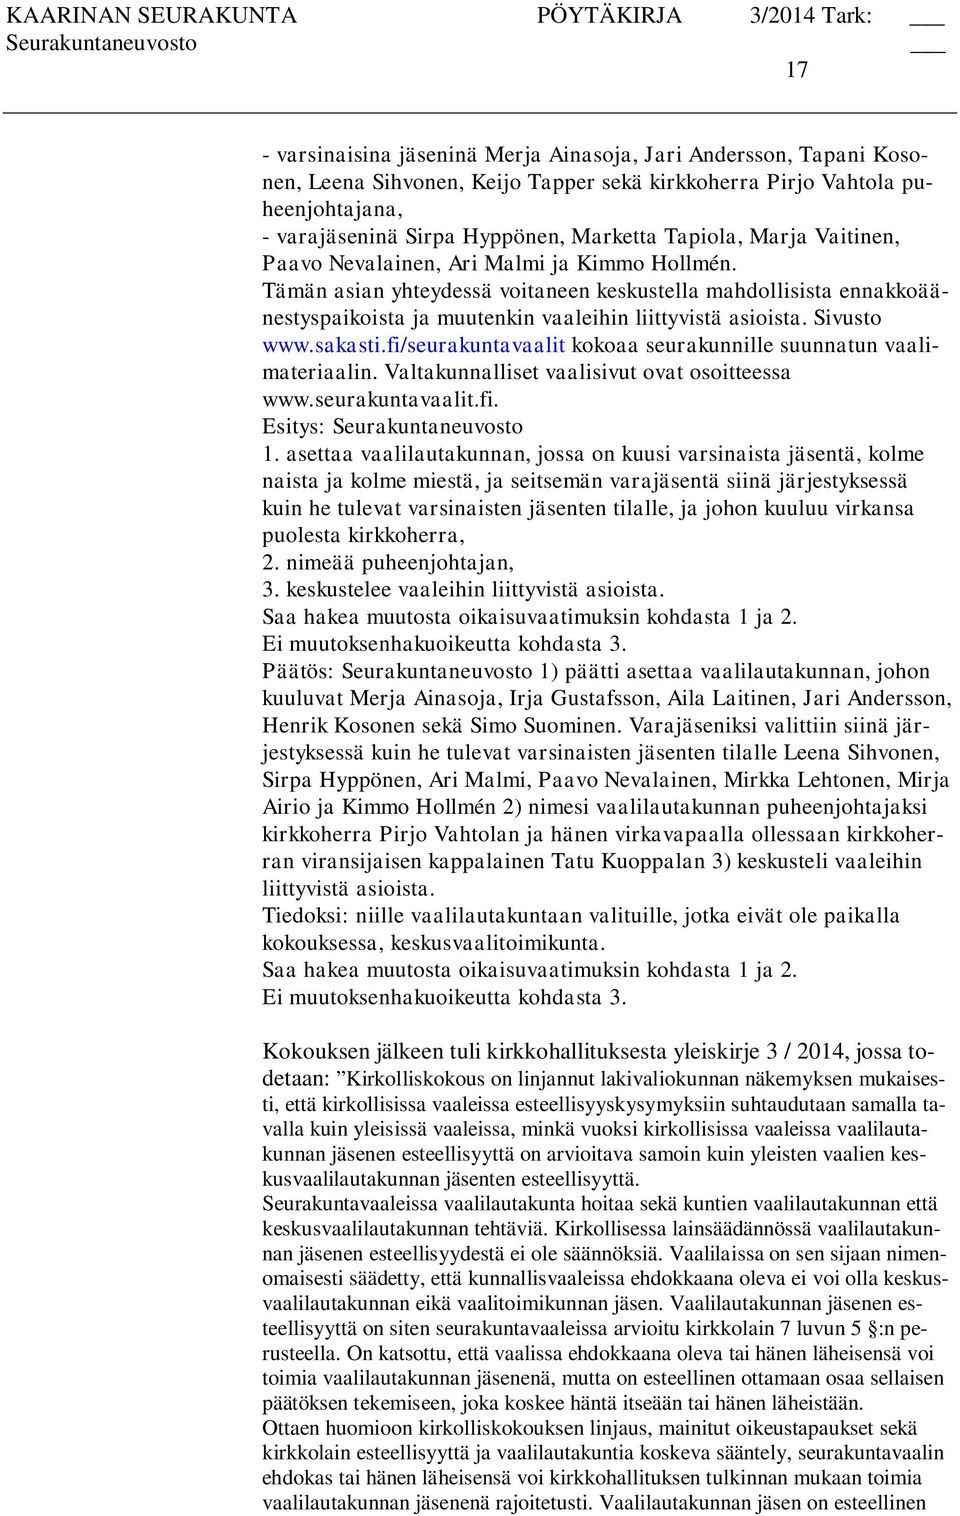 Sivusto www.sakasti.fi/seurakuntavaalit kokoaa seurakunnille suunnatun vaalimateriaalin. Valtakunnalliset vaalisivut ovat osoitteessa www.seurakuntavaalit.fi. Seurakuntaneuvosto 1.